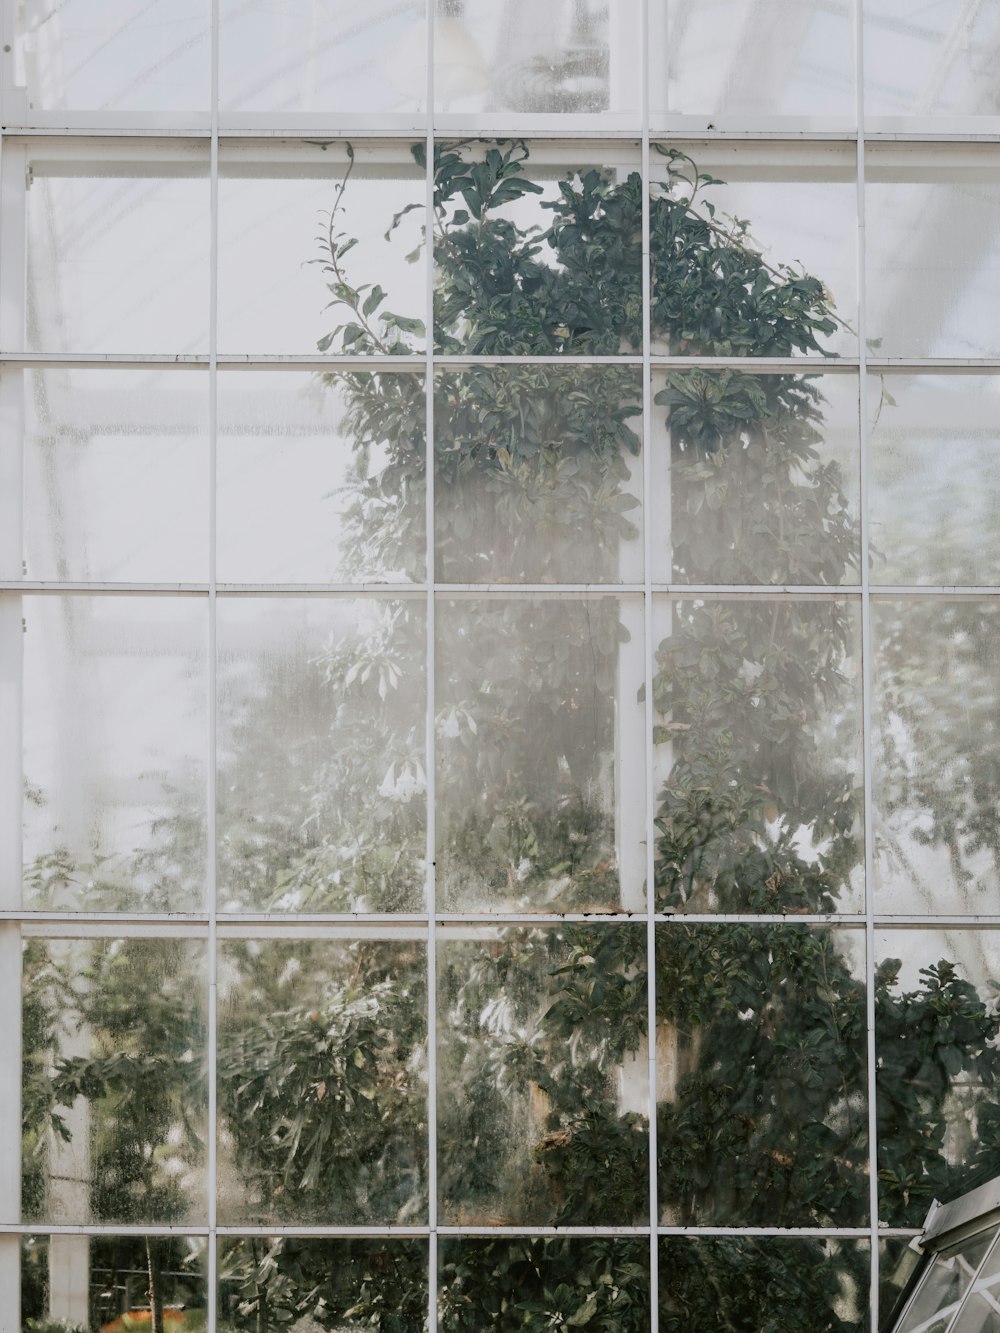 그 중간에 식물이있는 창문